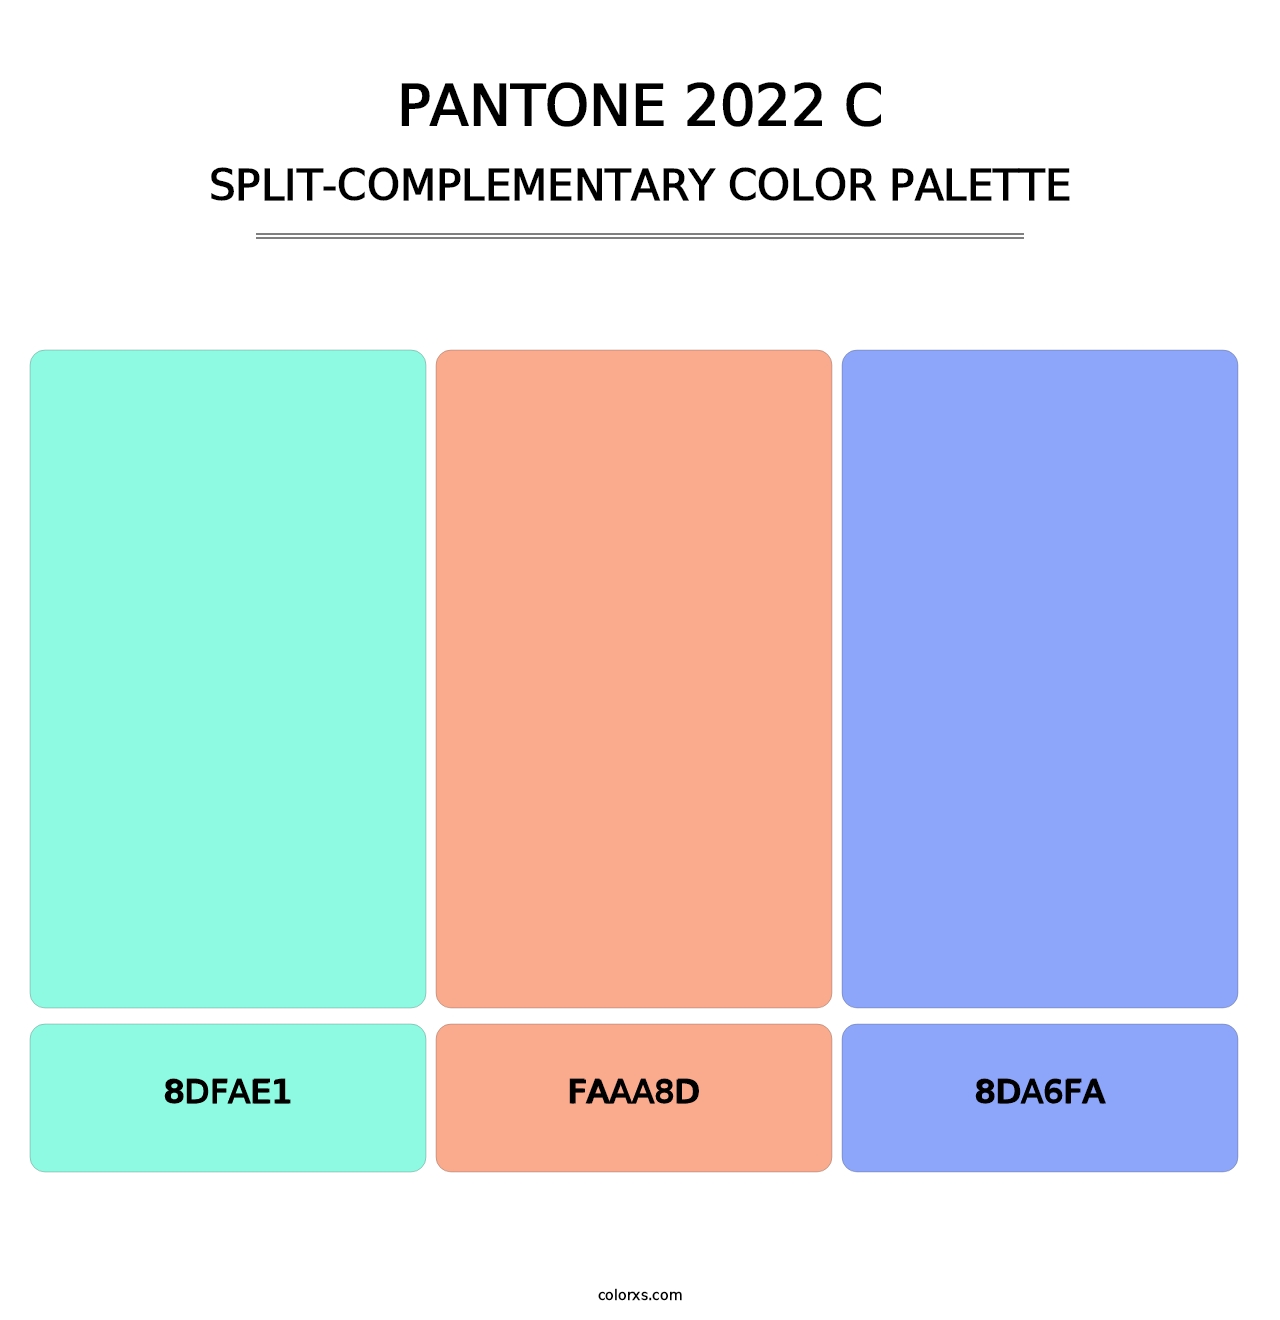 PANTONE 2022 C - Split-Complementary Color Palette